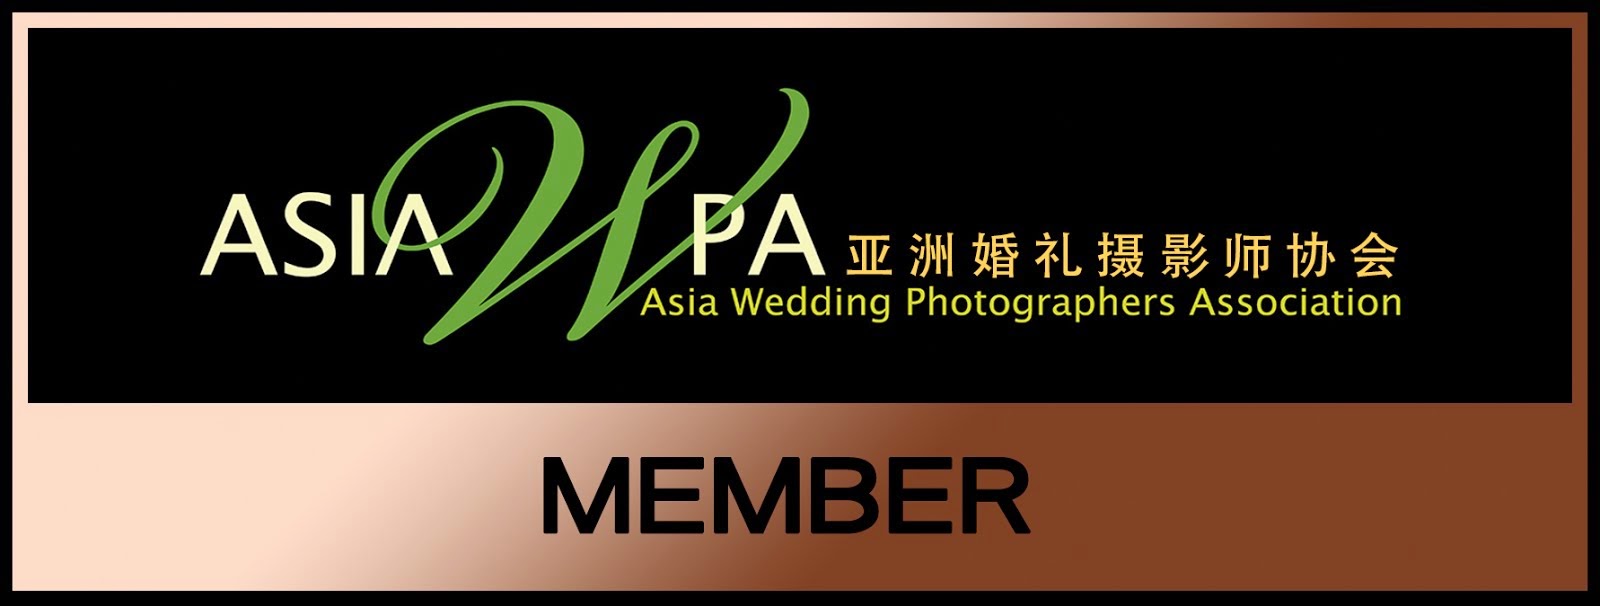 亞洲婚禮攝影師協會